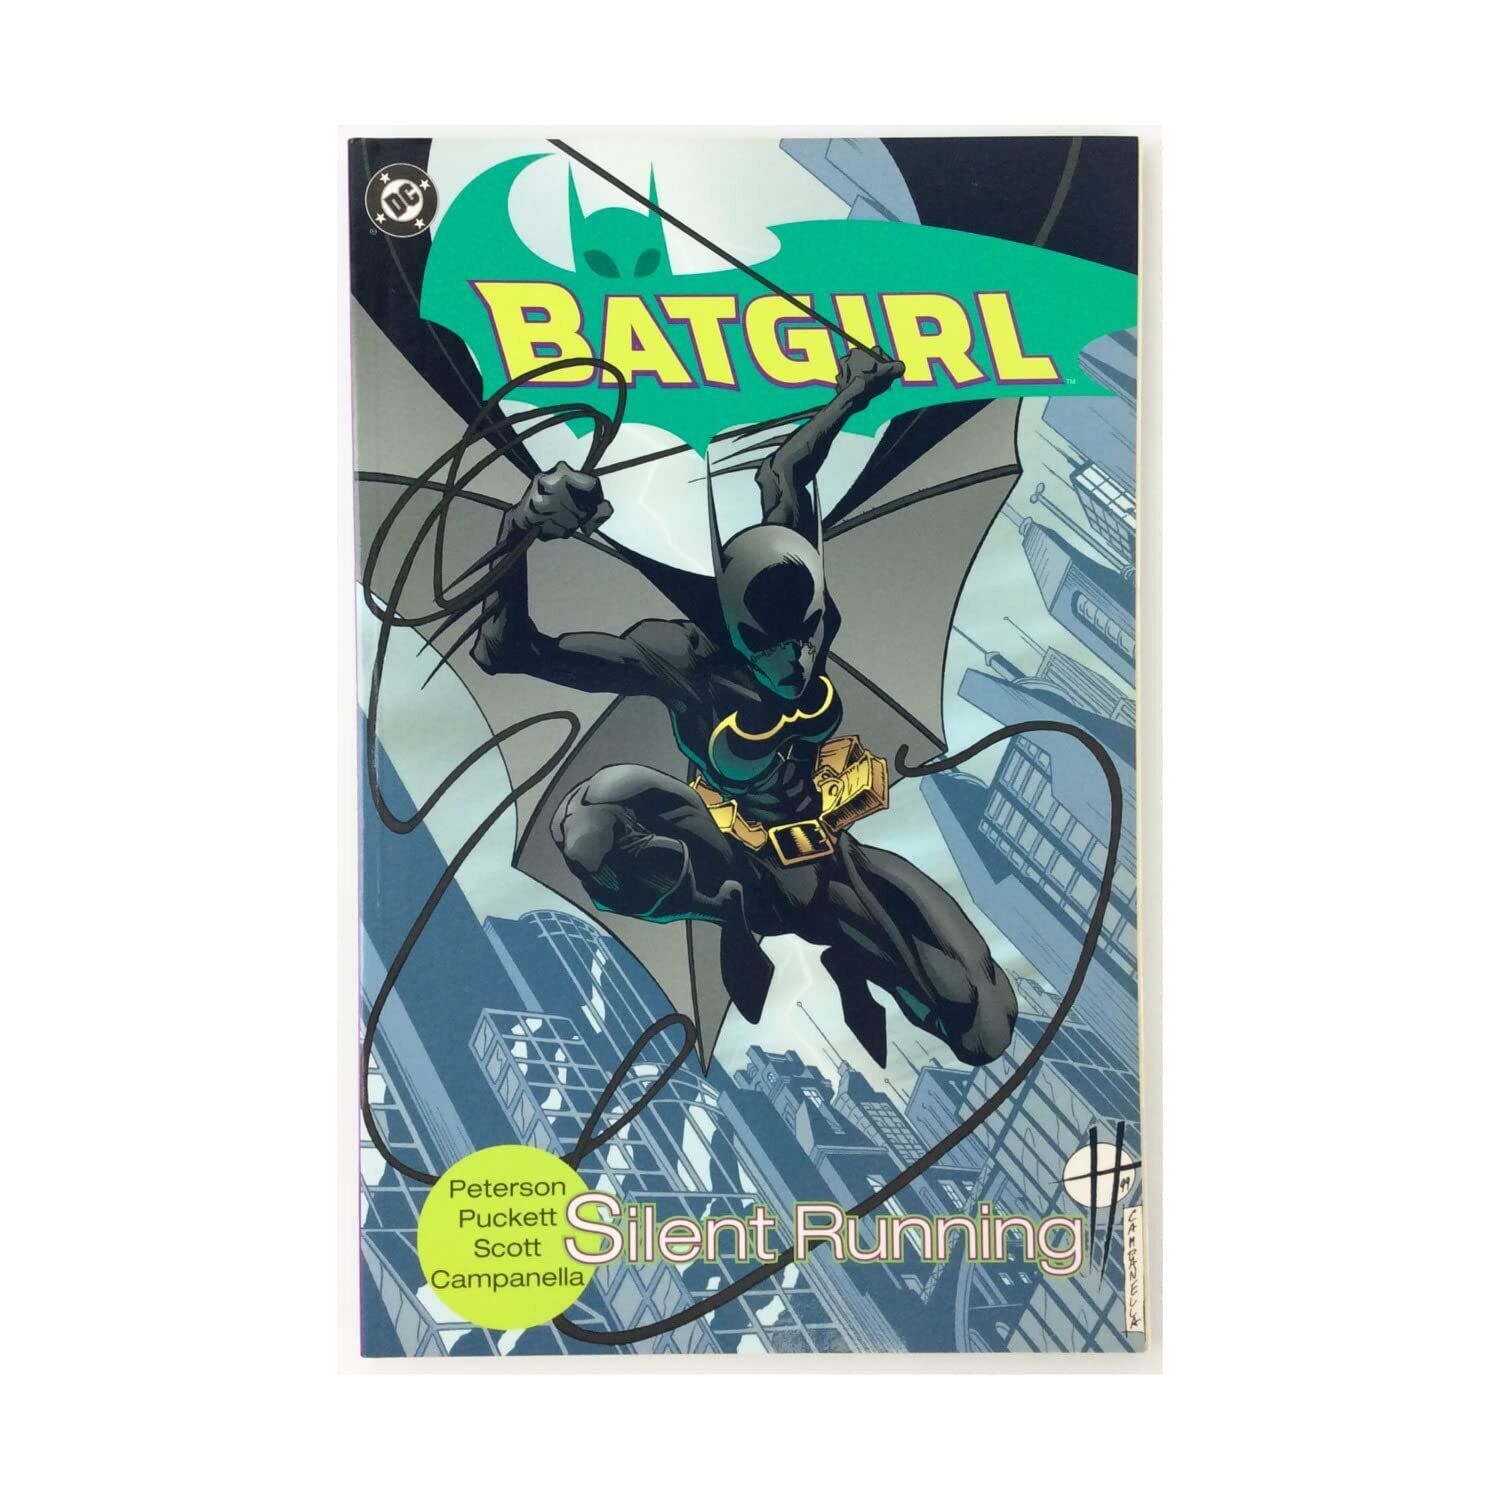 Batgirl: Silent Running